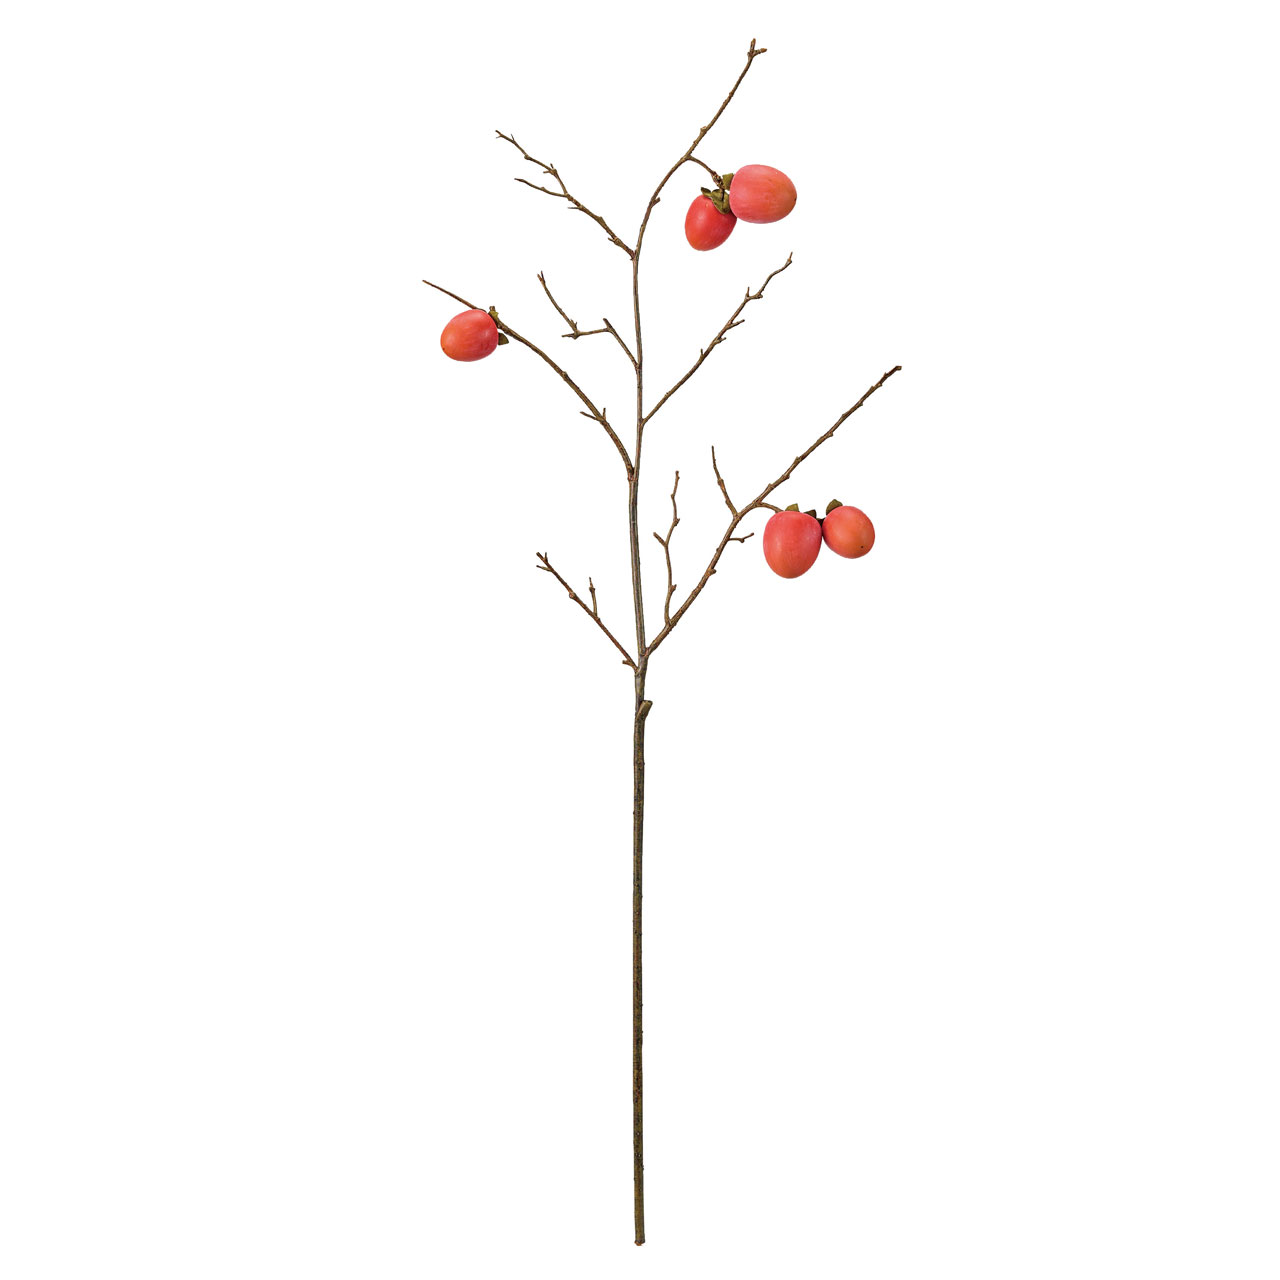 東京堂オリジナルブランド 【MAGIQ】 今までの造花にはないリアルな品質のアーティフィシャルフラワーをお届けします。オレンジの江戸の柿枝　アーティフィシャルフラワー　造花。小ぶりな実が5つ付いた、季節のディスプレイに使いやすいサイズ感。枝がしなるので自然な表情で飾っていただけます。サイズ：長さ 約92cm、実の長さ 約4.5〜5.5cm素材 : 発泡スチロール内容量 : 1本色相：オレンジ